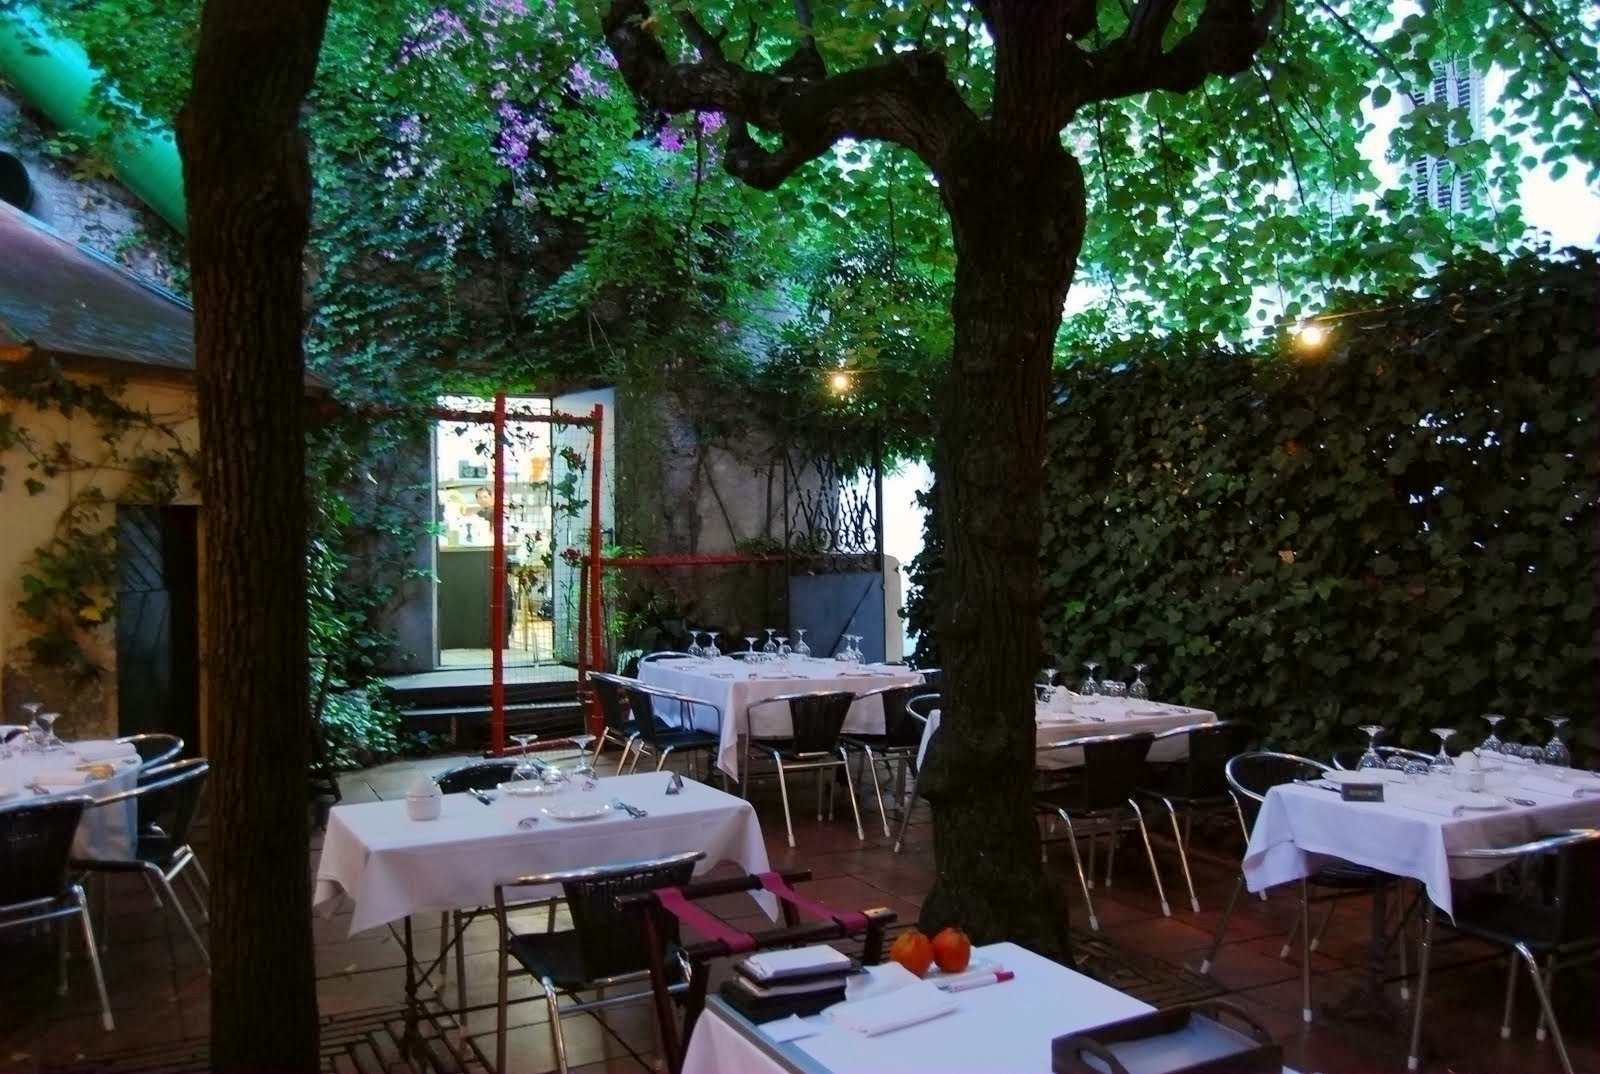 En el barrio de Sarrià el restaurante con mejor valoración nos ofrece un comedor en medio de un jardín